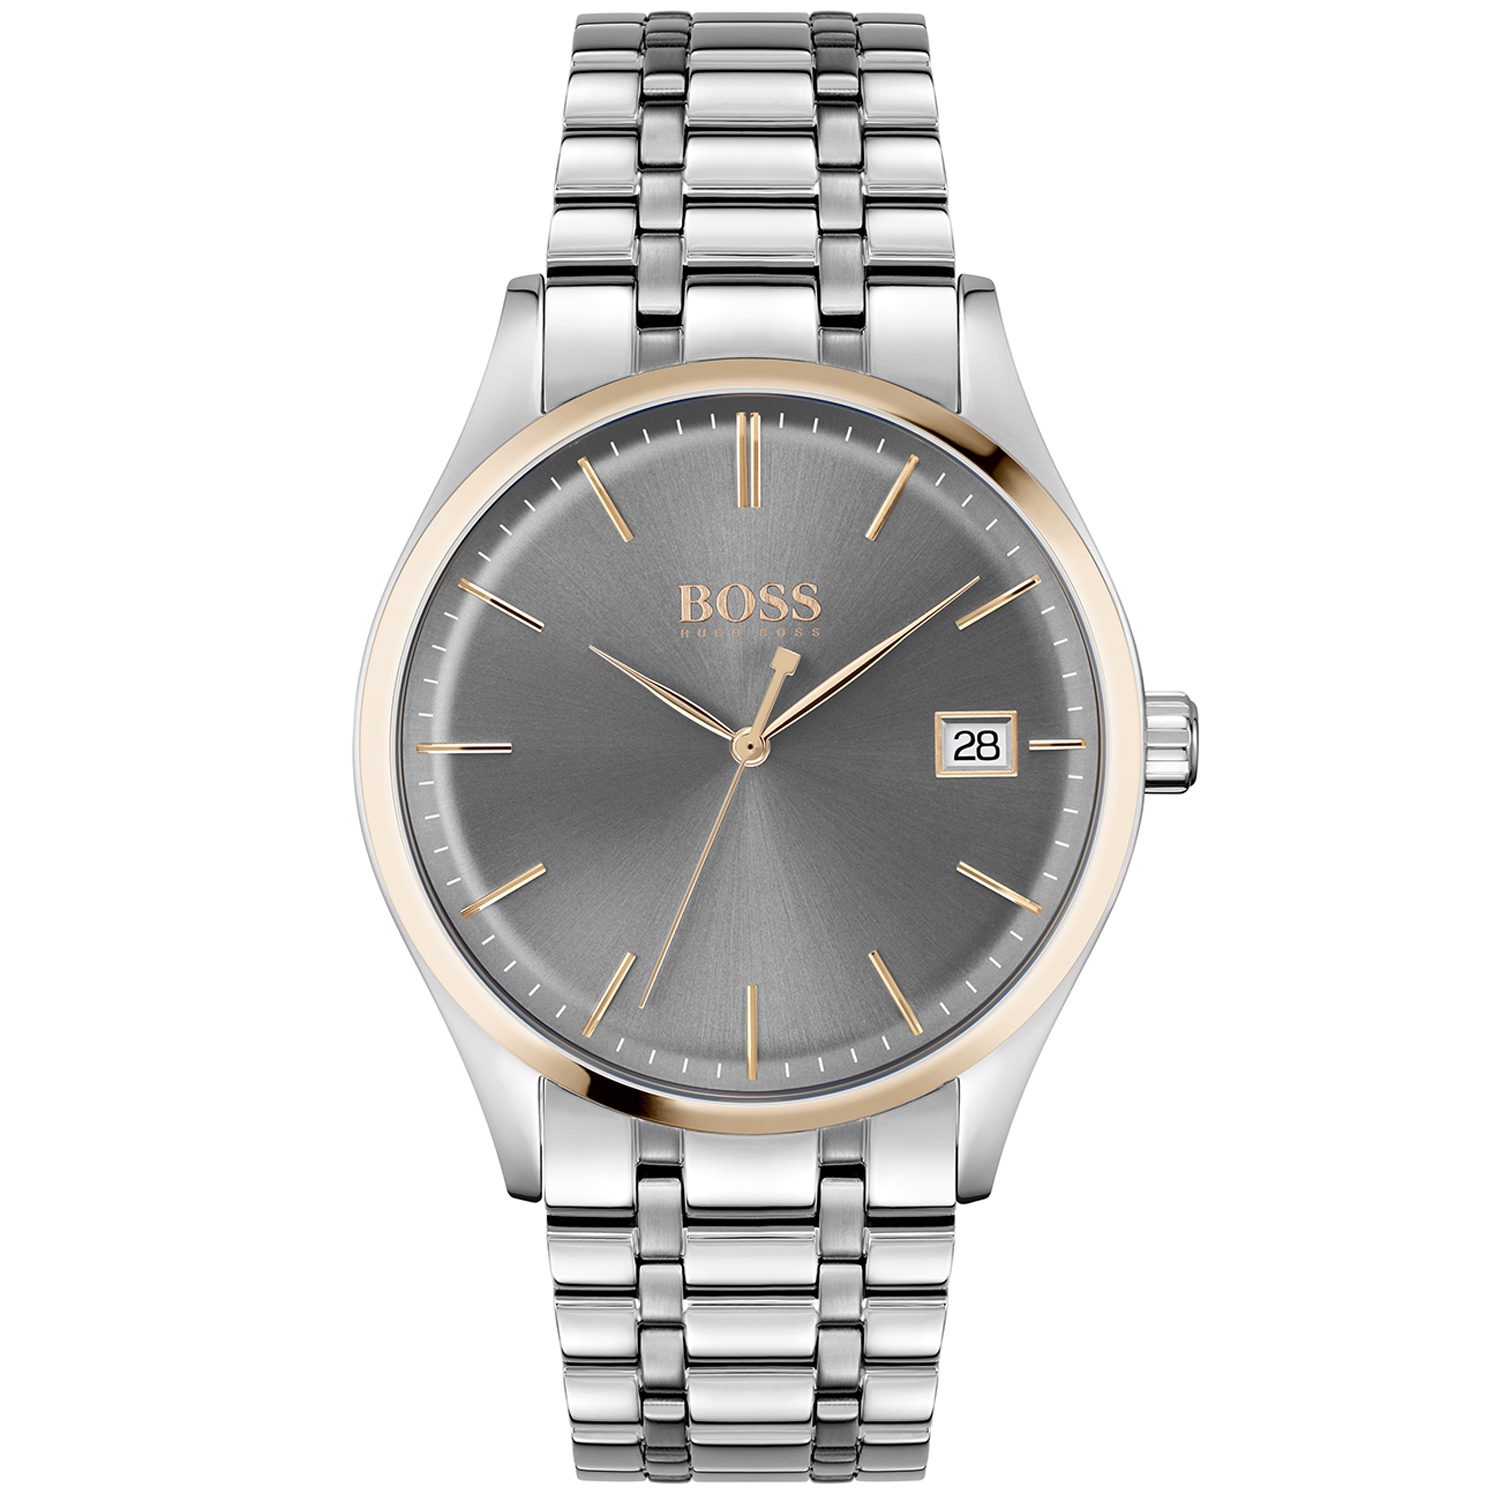 Hugo Boss heren horloge 1513834 - zilver staal armband - datum - elegante polshorloge